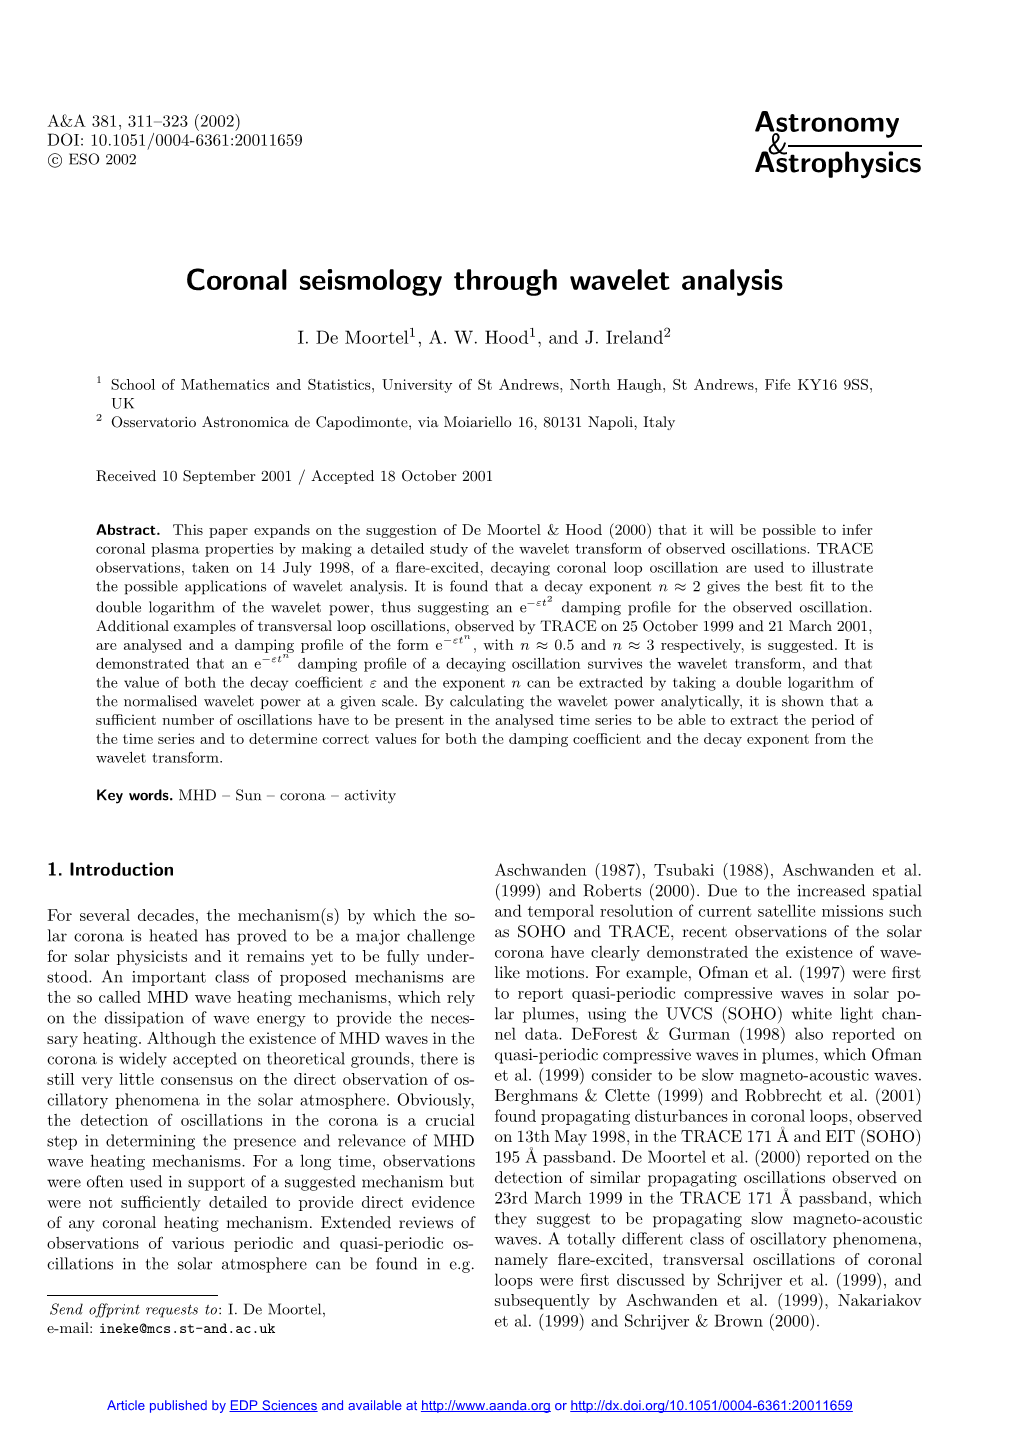 Coronal Seismology Through Wavelet Analysis